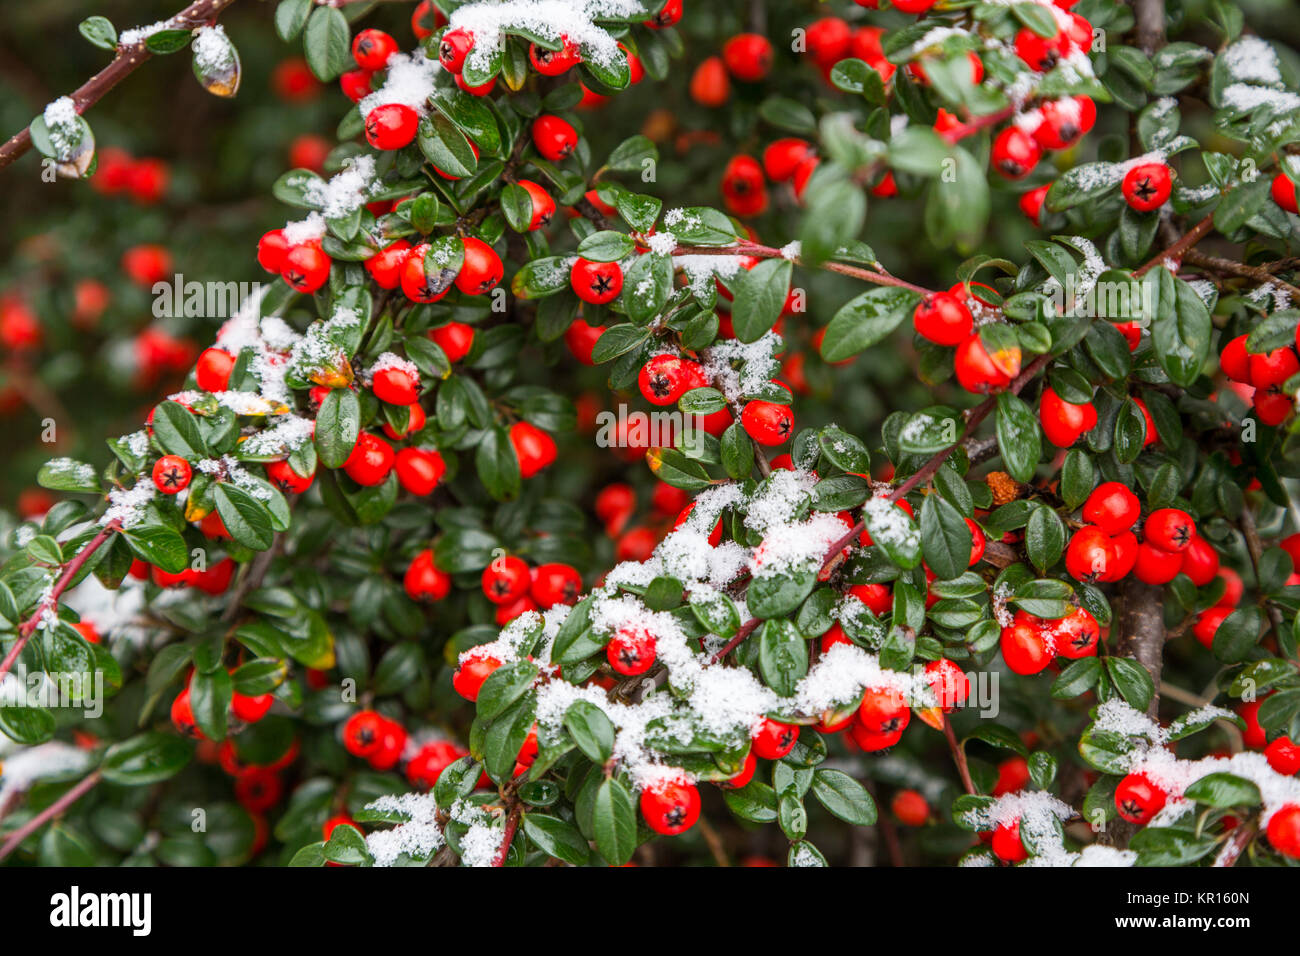 Ein Cotoneaster Strauch mit leuchtend roten Beeren im Schnee auf einem  kalten Winter Dezember Tag abgedeckt wird ein Thema Weihnachten. England,  Großbritannien Stockfotografie - Alamy